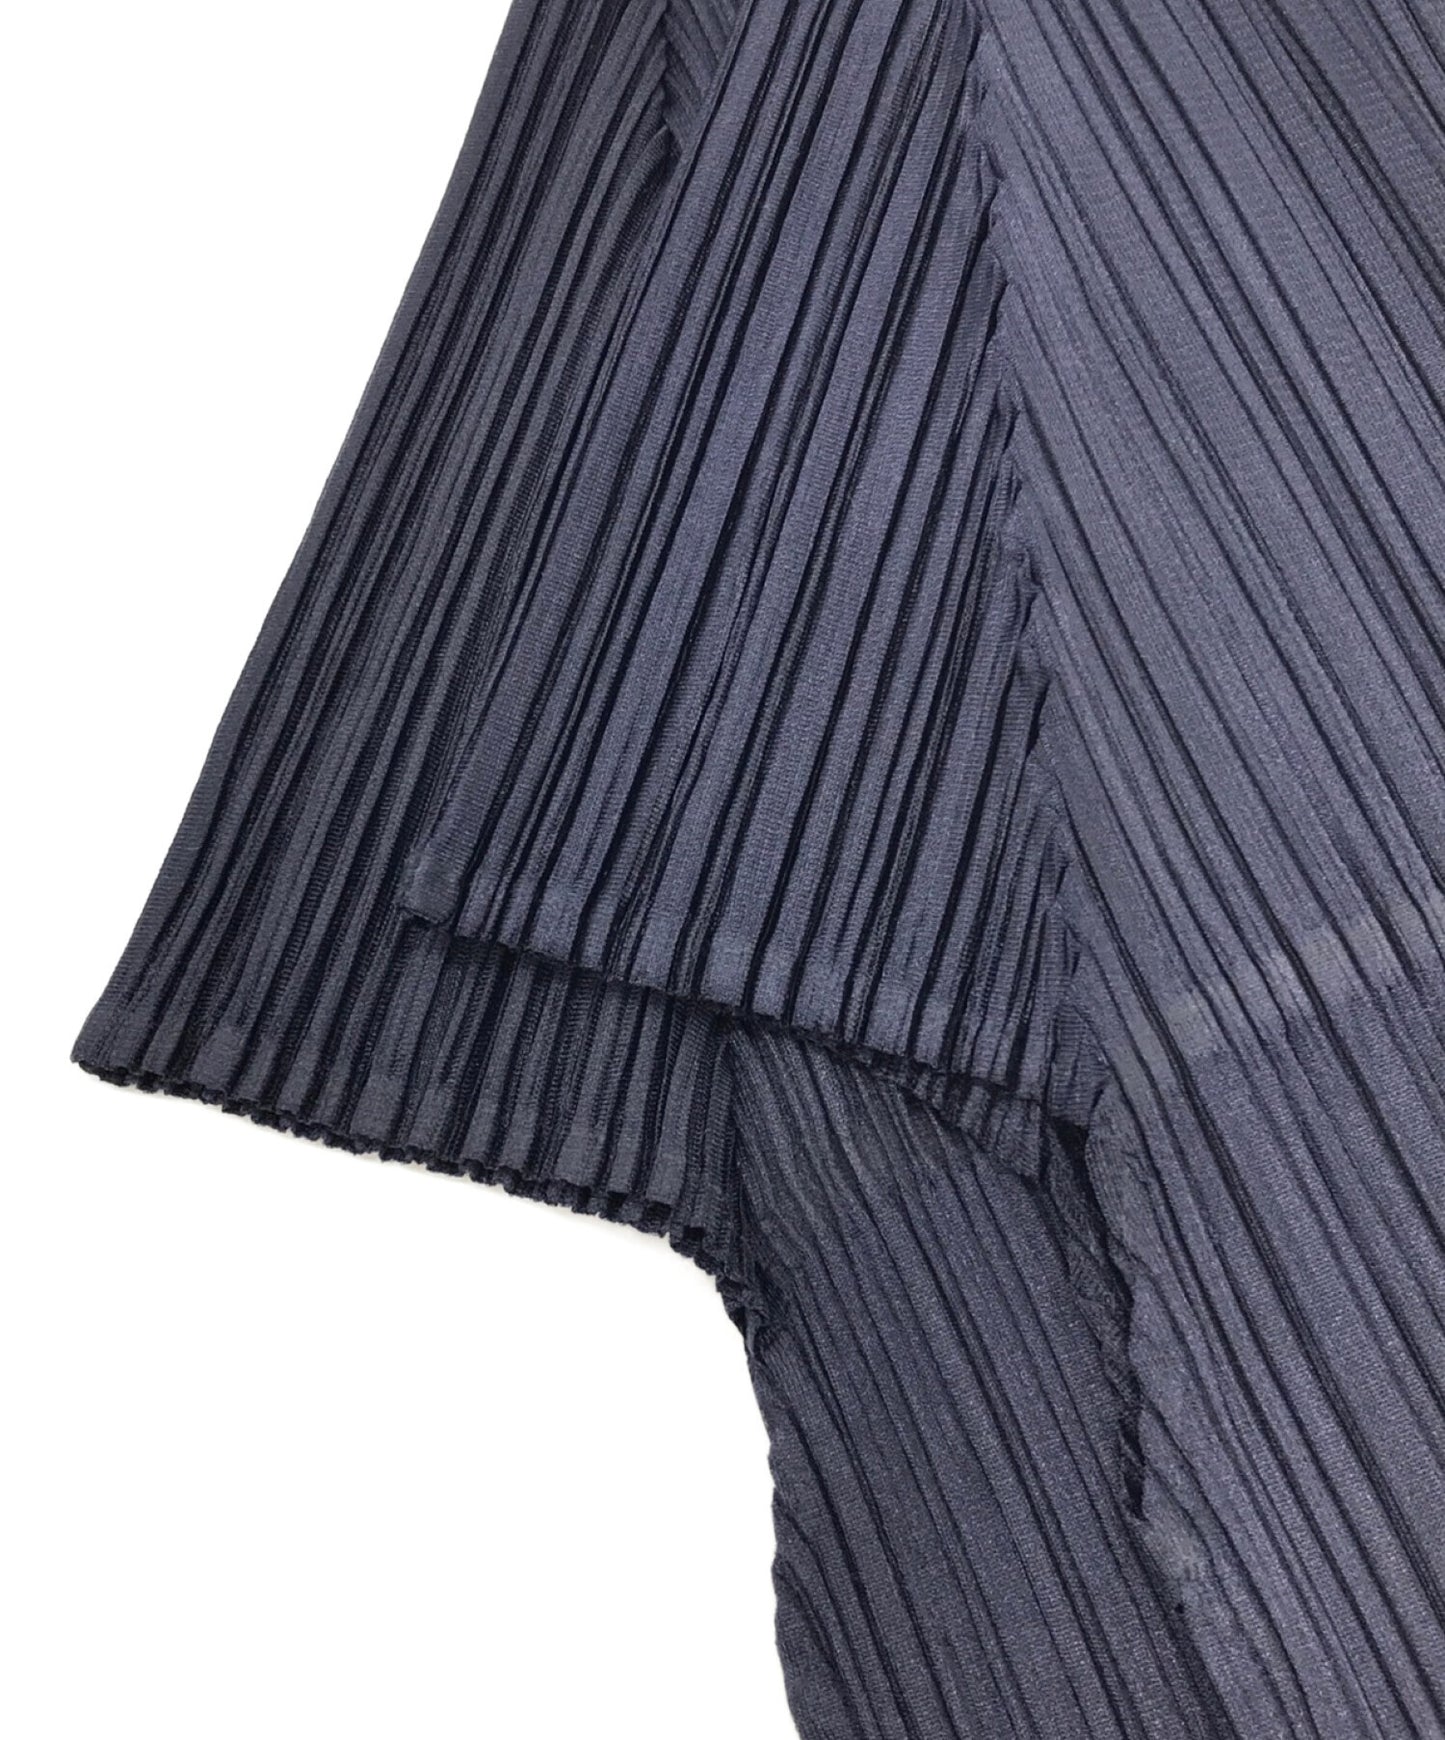 褶皱请切割和缝制下摆的褶皱切割，缝制和缝制短袖切割和缝制短袖pp21-jk521